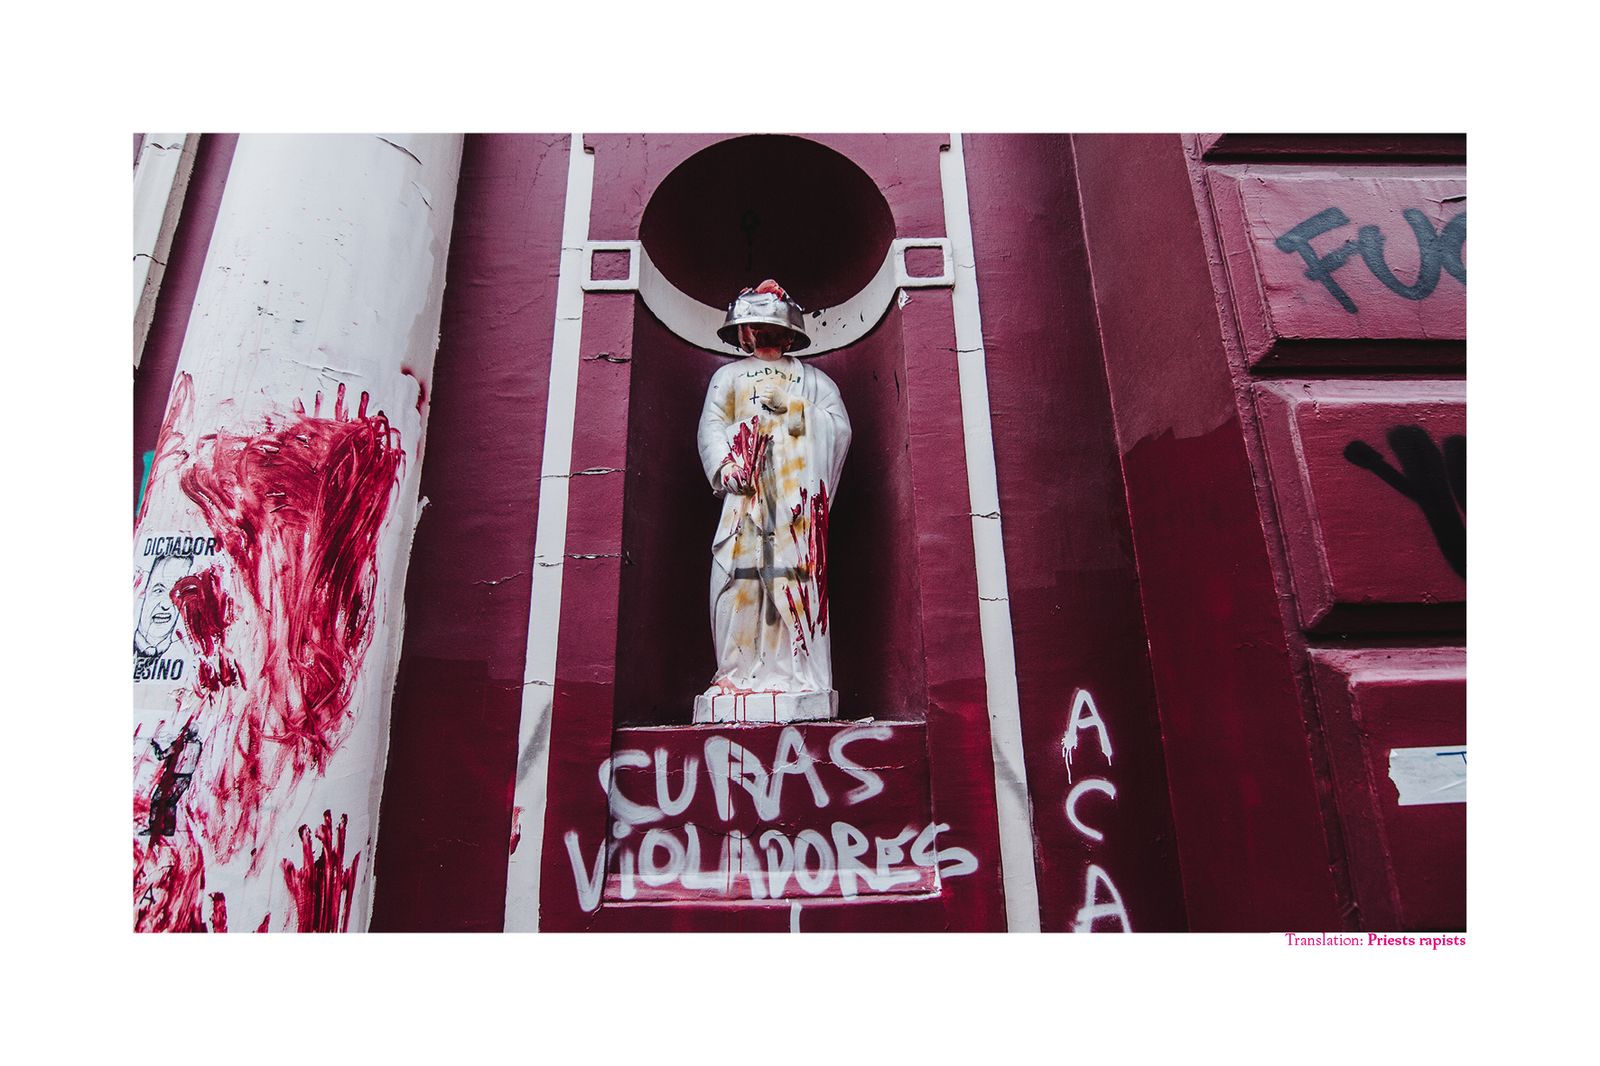 © Matias Cortez - Priests Rapists